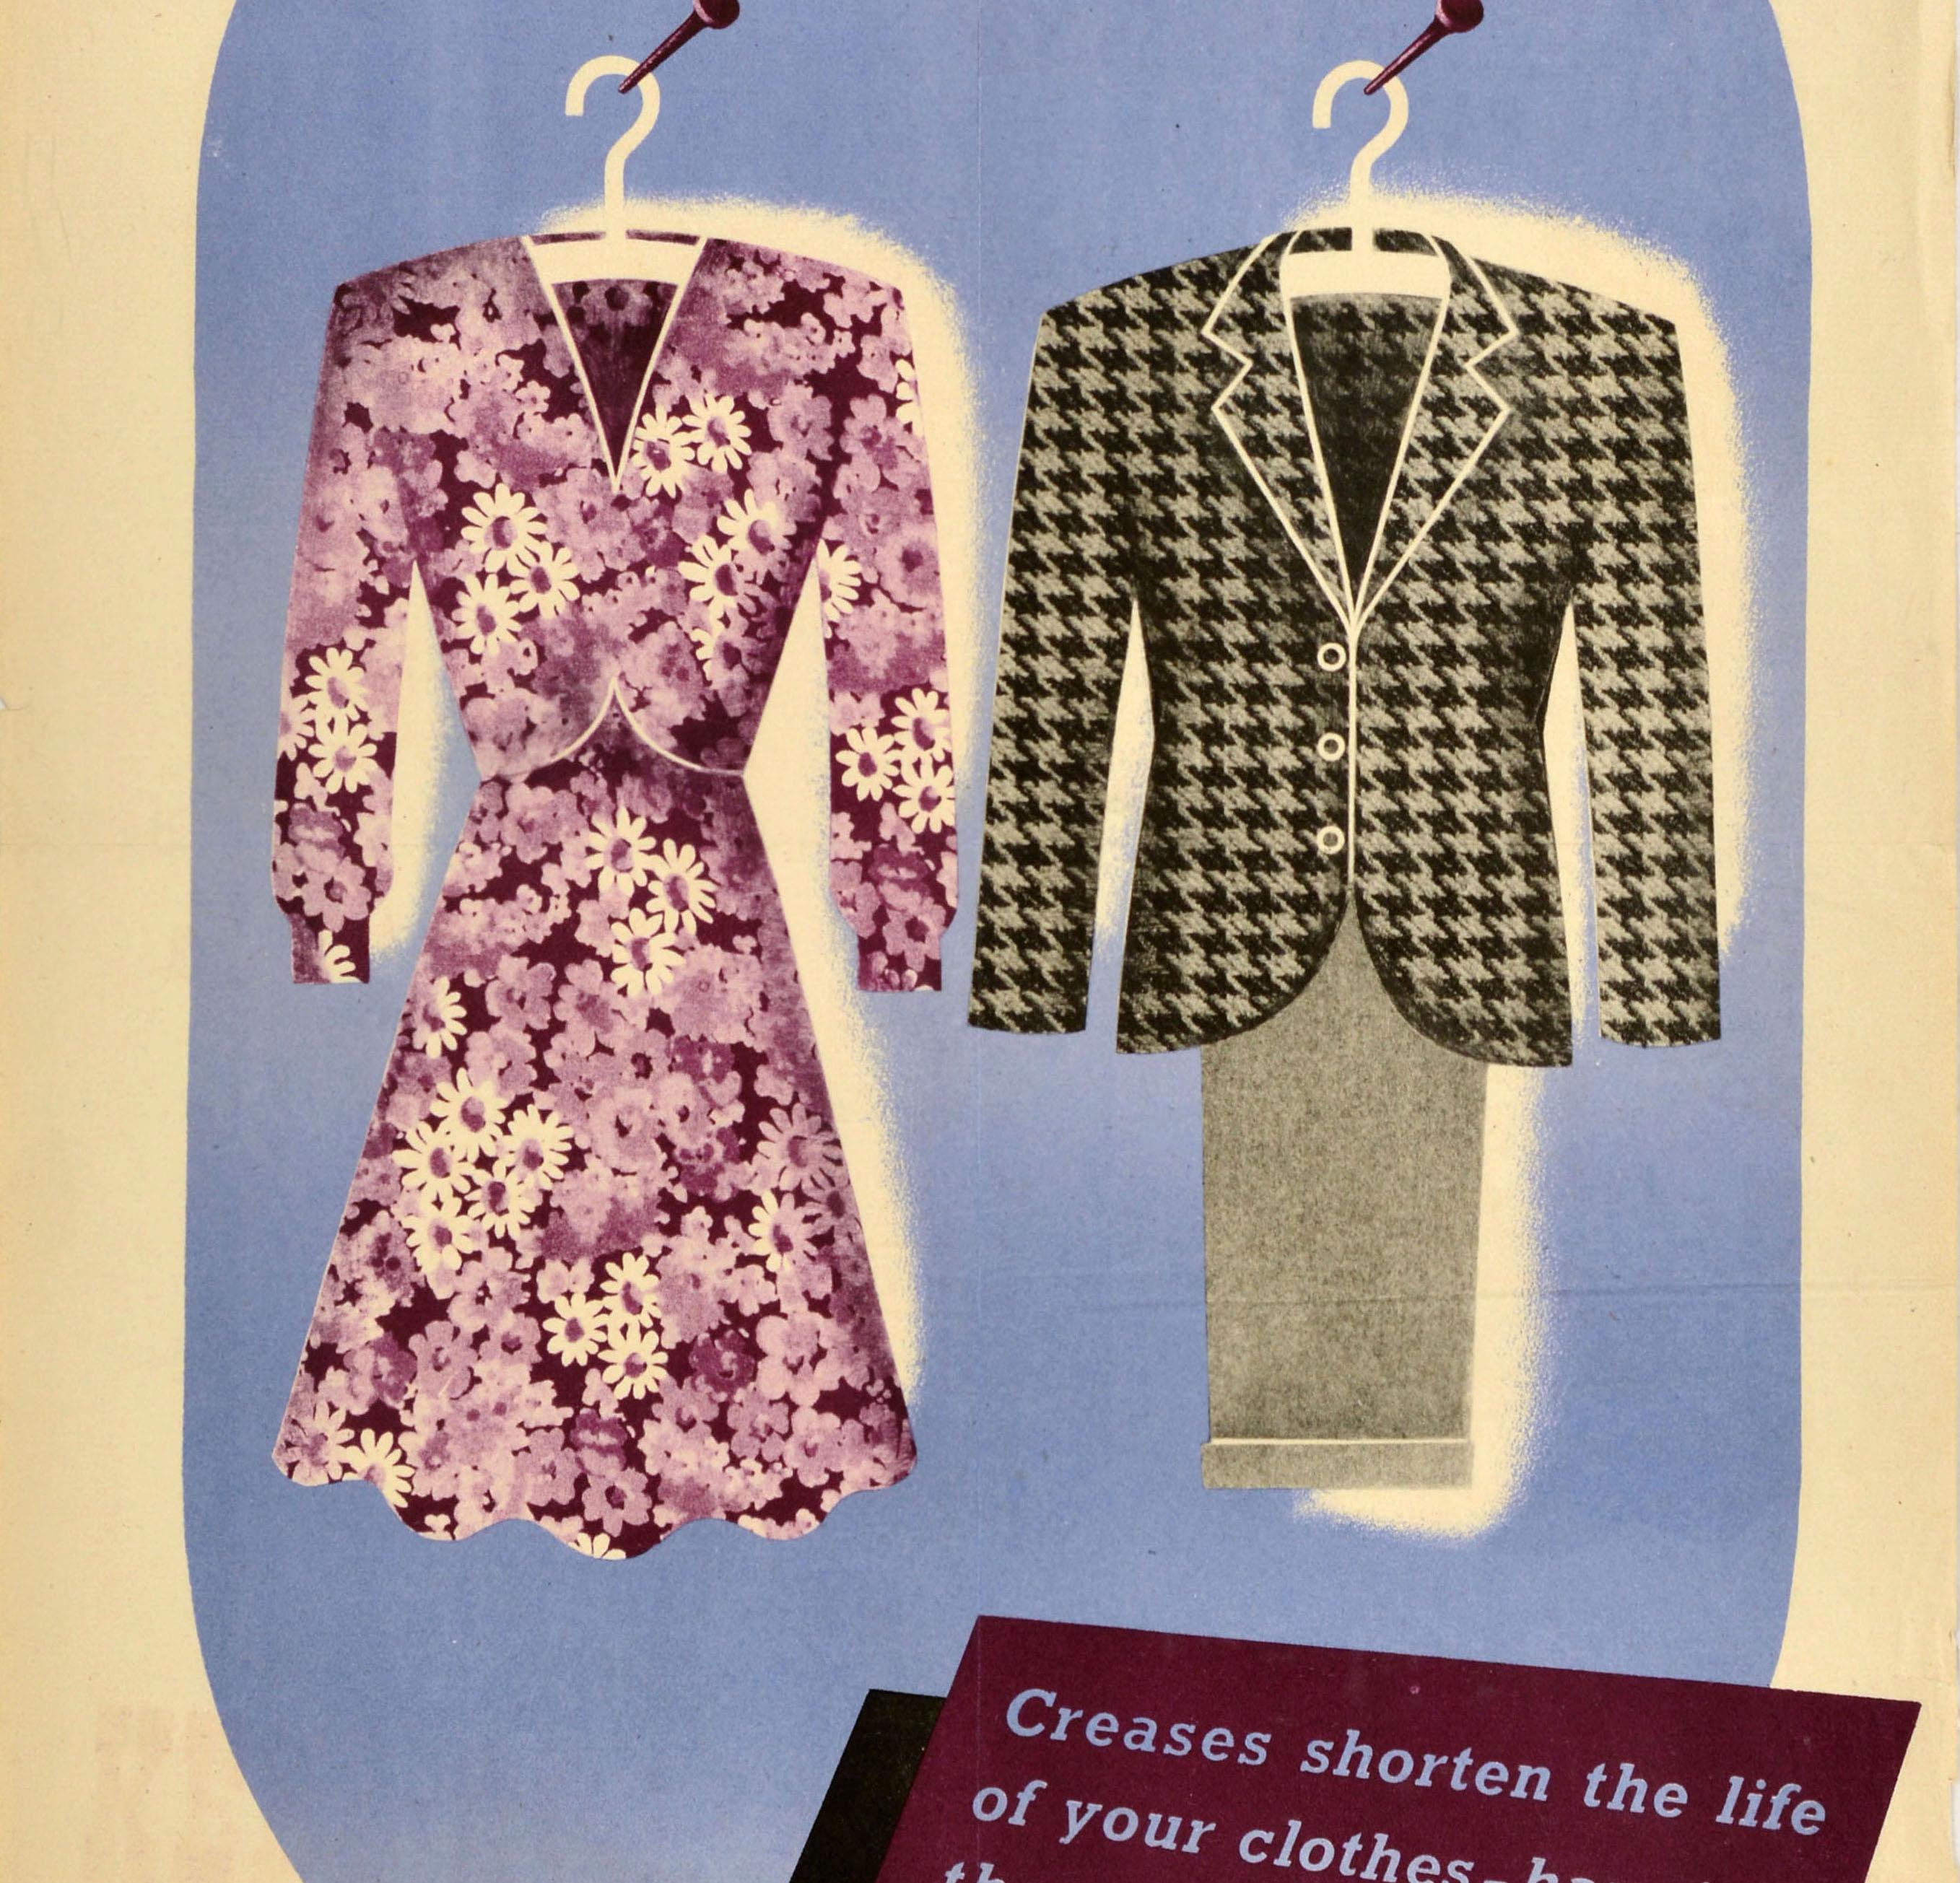 Original Vintage World War Two Home Front Poster - Keep Clothes On Hangers Knitter verkürzen die Lebensdauer Ihrer Kleidung Aufhängen, gebürstet und gebügelt, spart Coupons - mit einem Bild von einem geblümten Kleid und einem Anzug auf